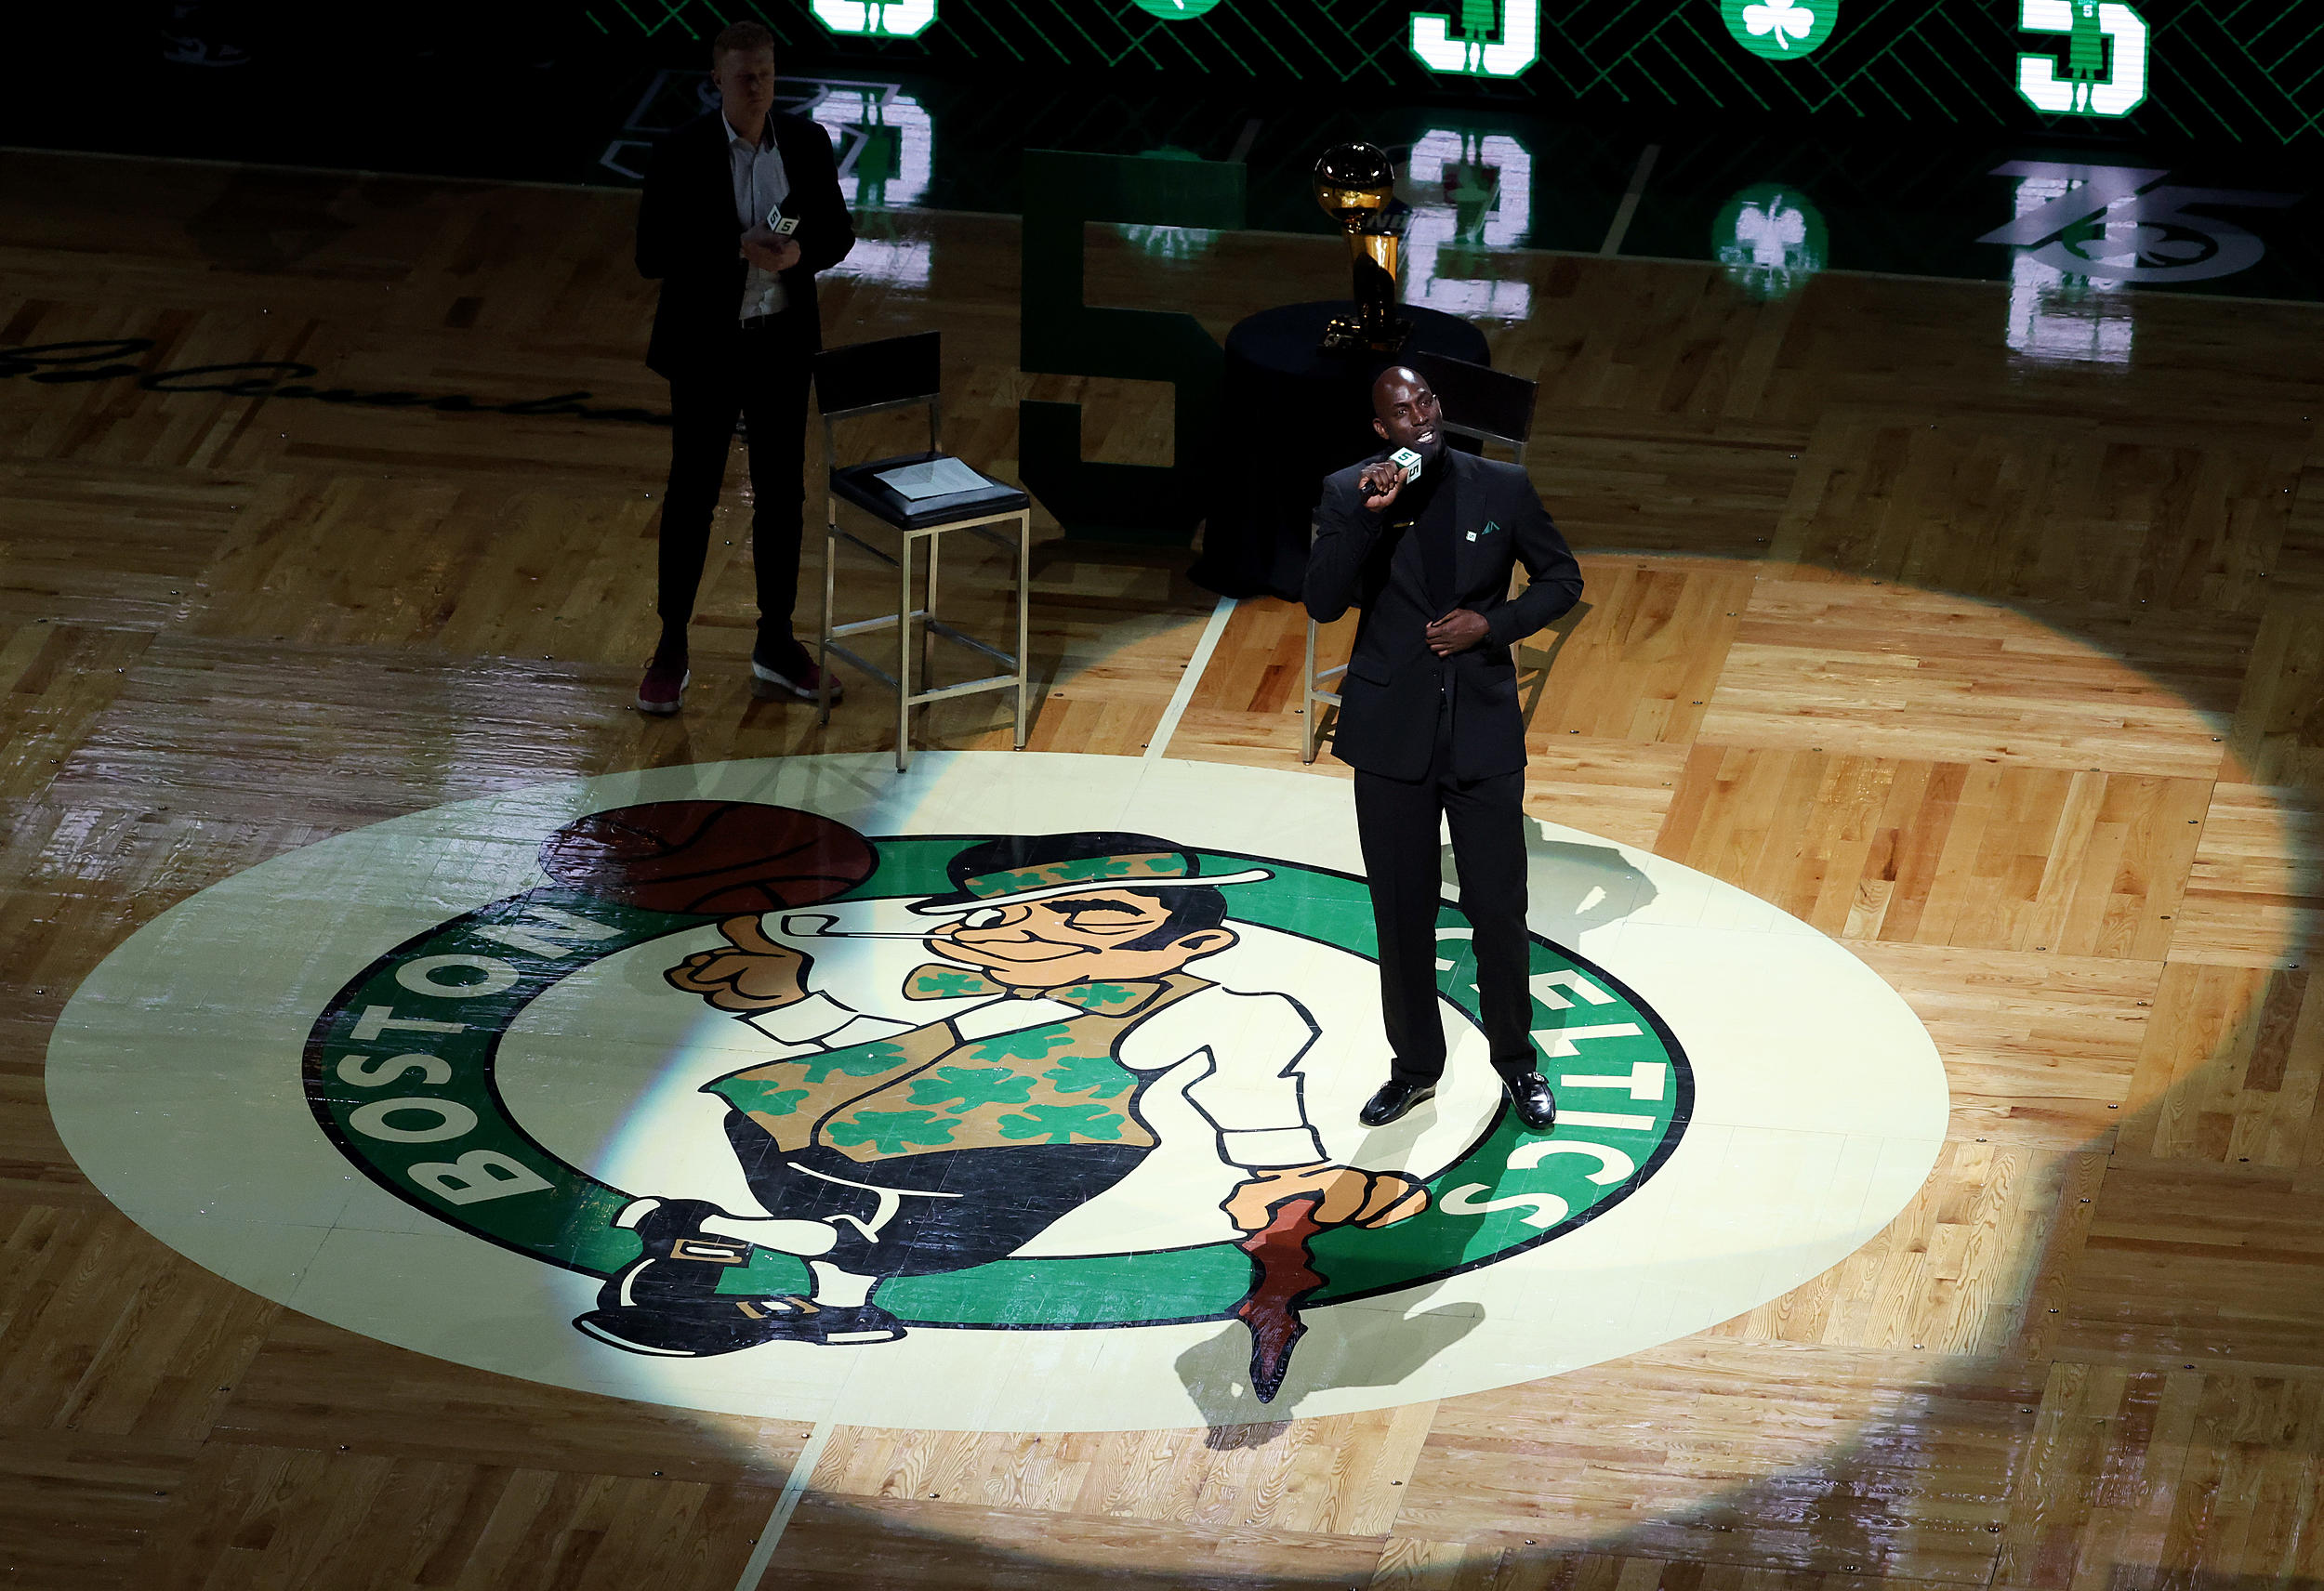 Celtics legend Garnett calls out Kyrie for stomping on logo